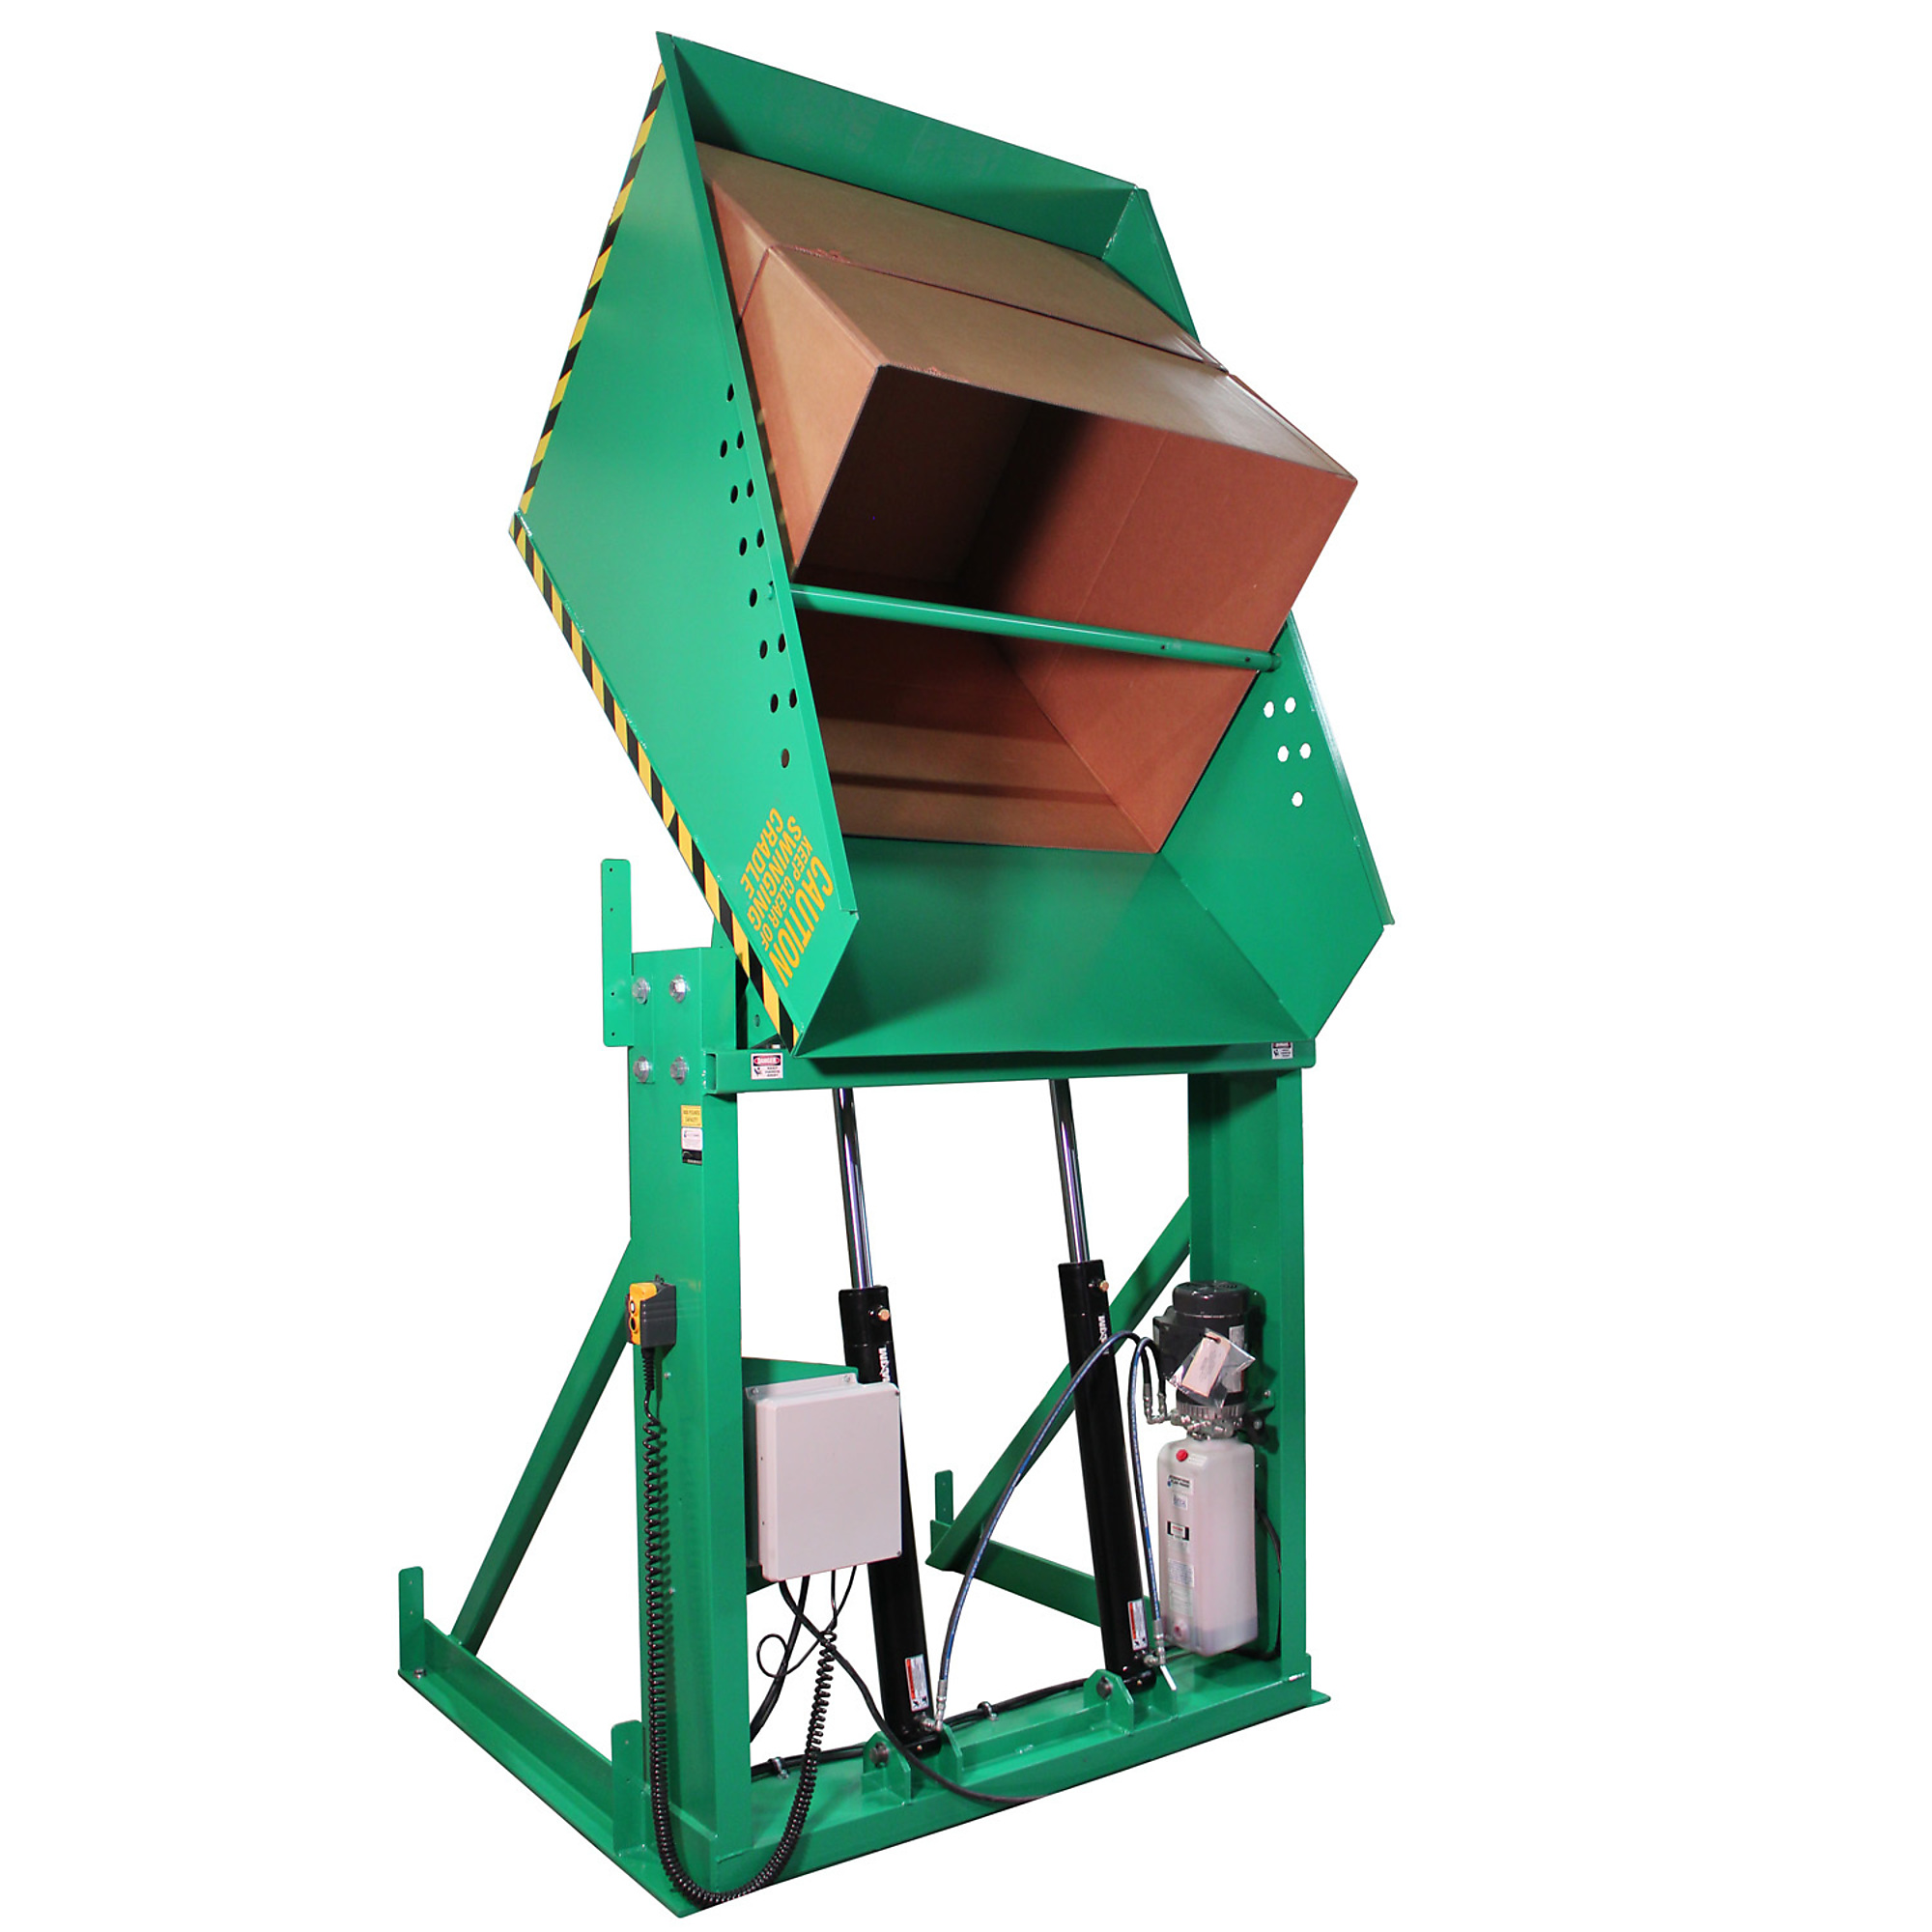 Valley Craft, Box Dumper, 36x36Inch Chute, Capacity 6000 lb, Color Green, Model F80185A5